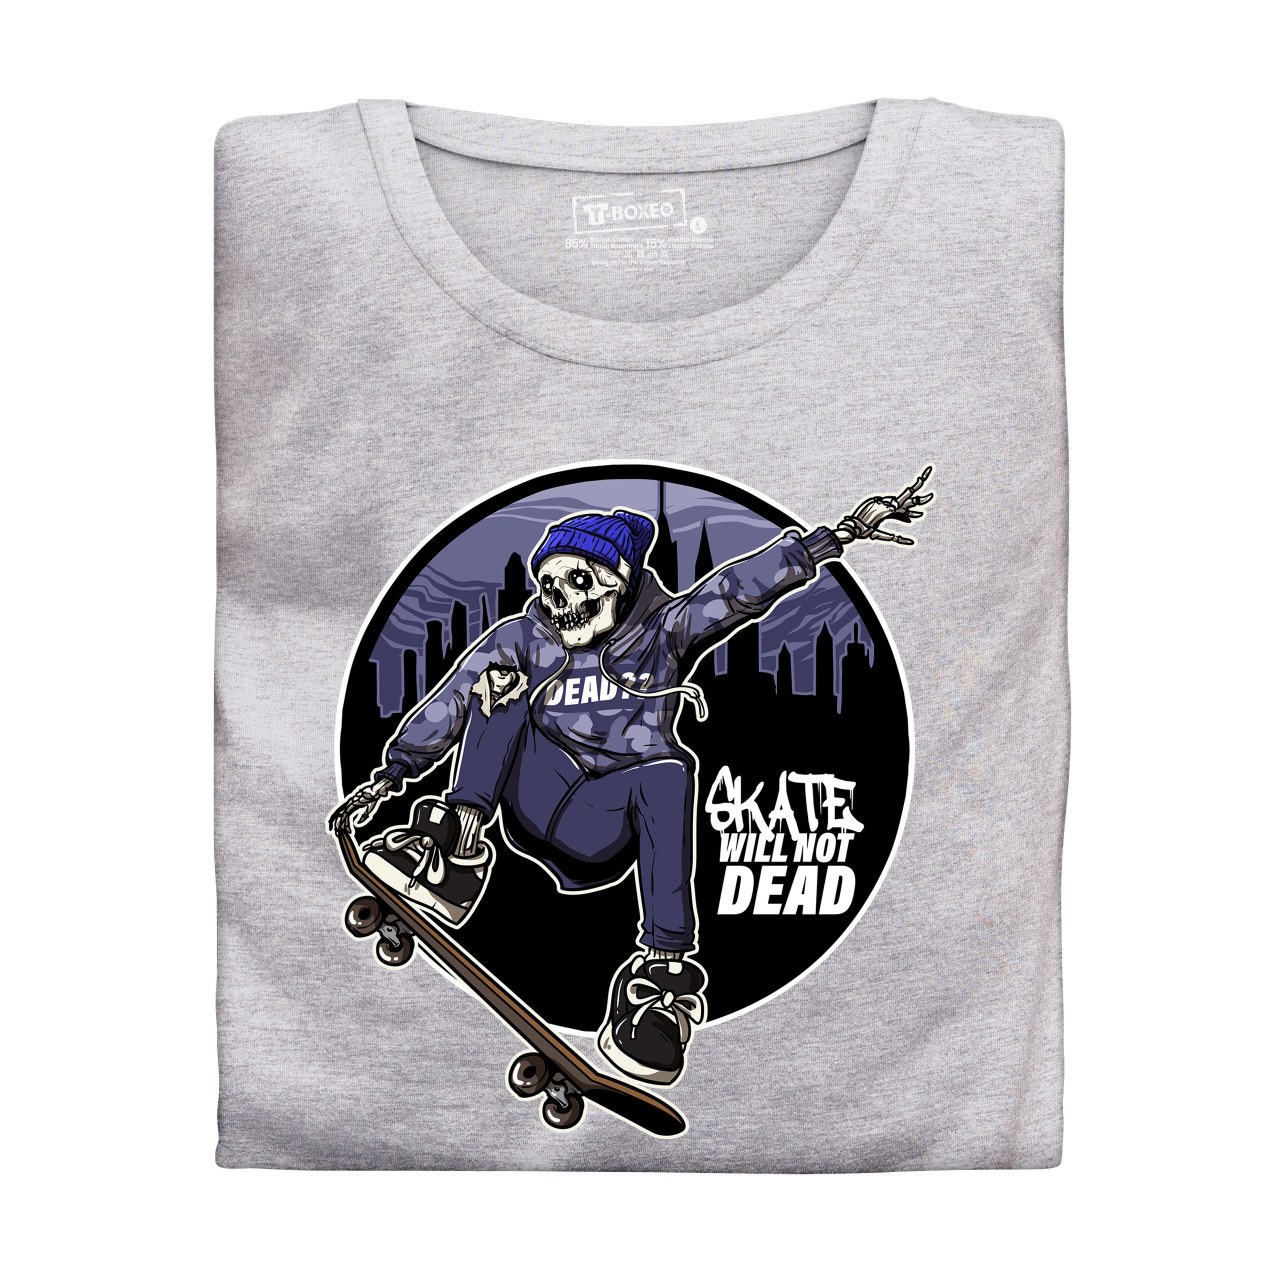 Pánské tričko s potiskem “Skate Will Not Dead"